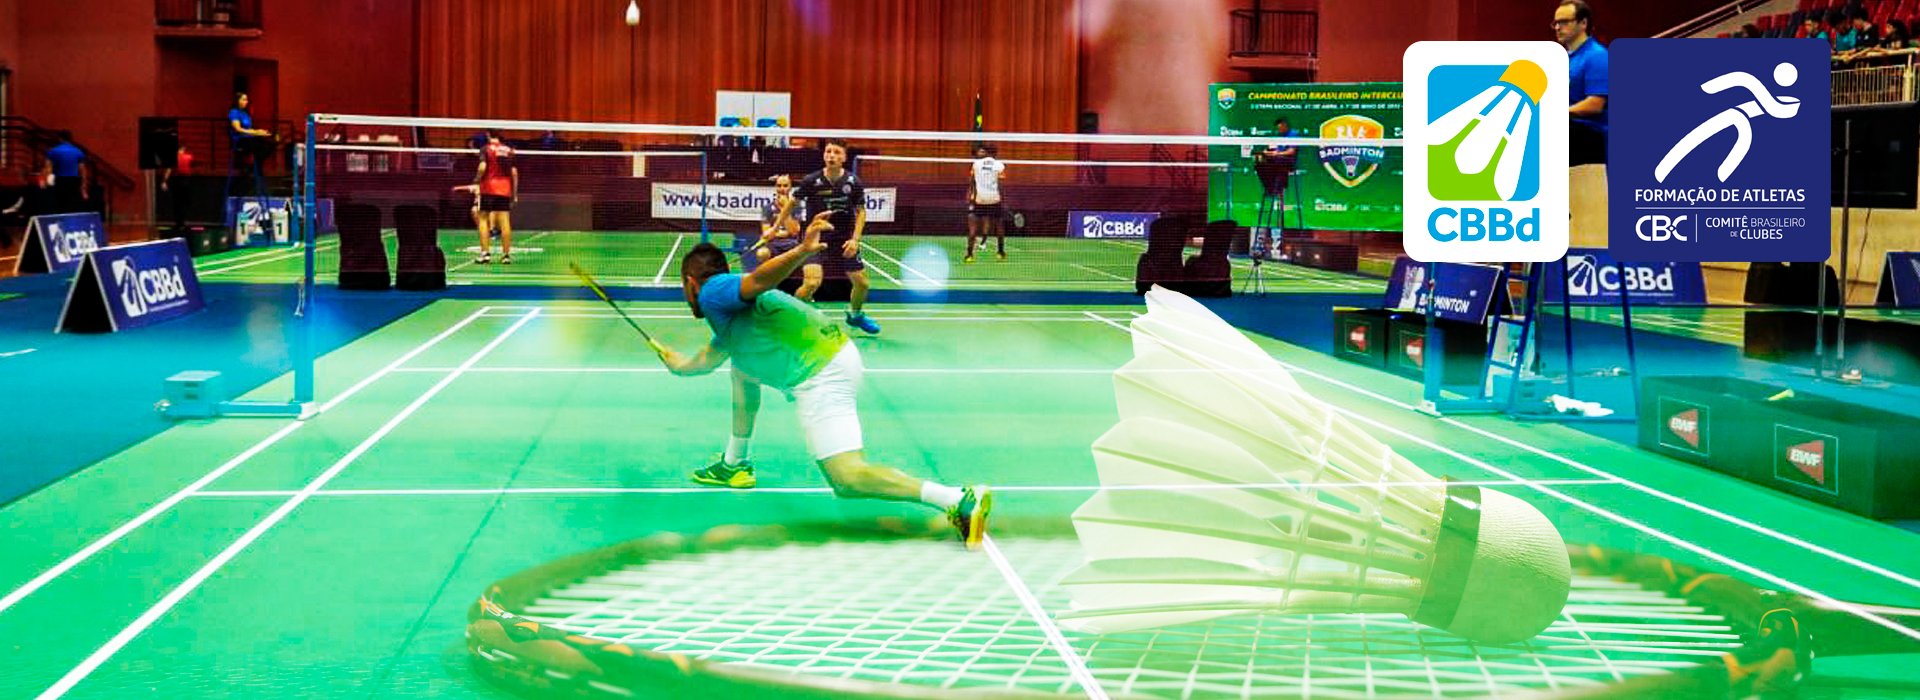 CBI® de Badminton vai movimentar o Paraná/PR até domingo 